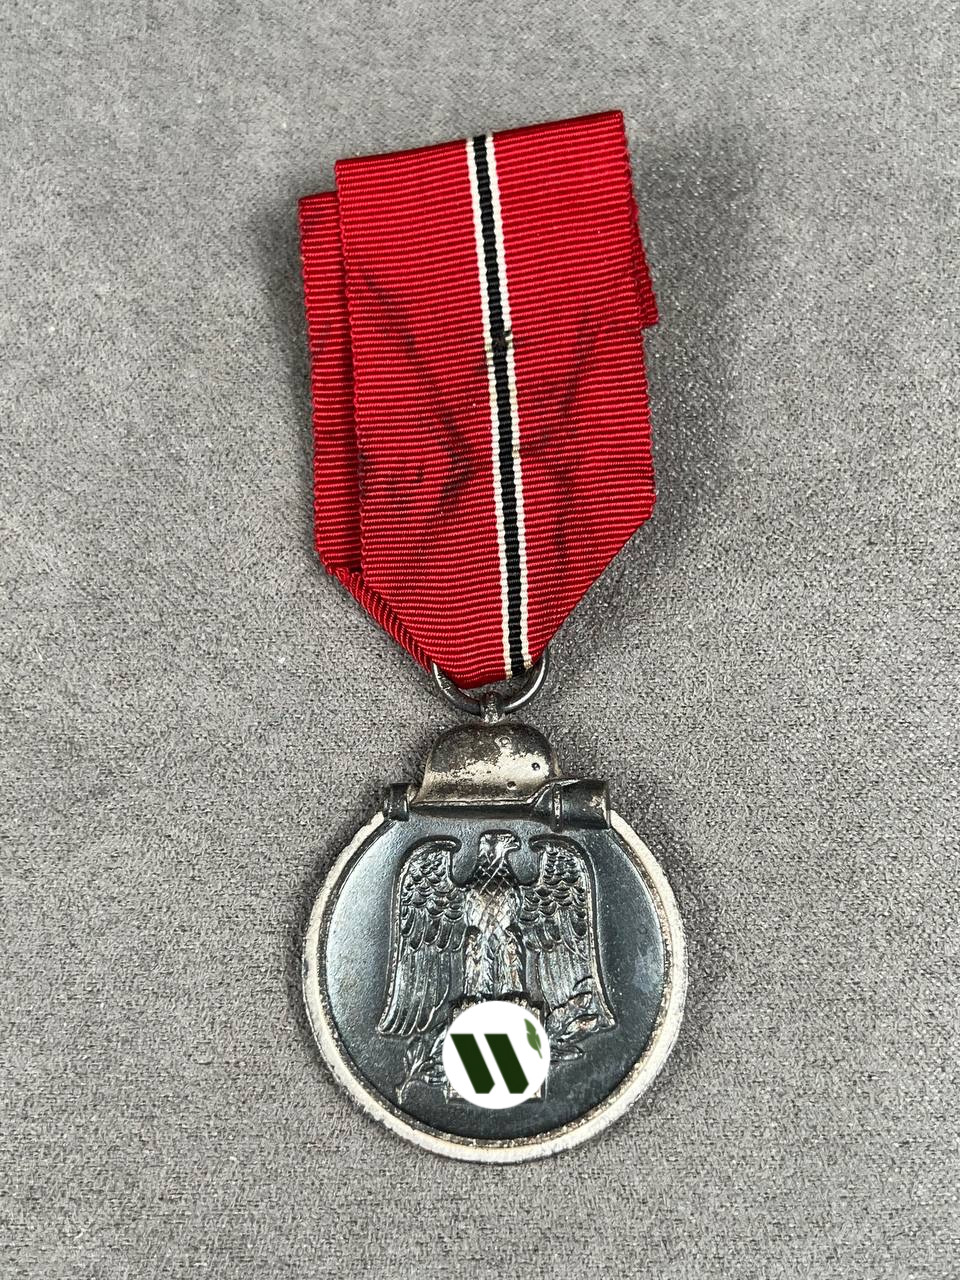 Медаль «За зимнюю кампанию на Востоке 1941/42» из коллекции в США